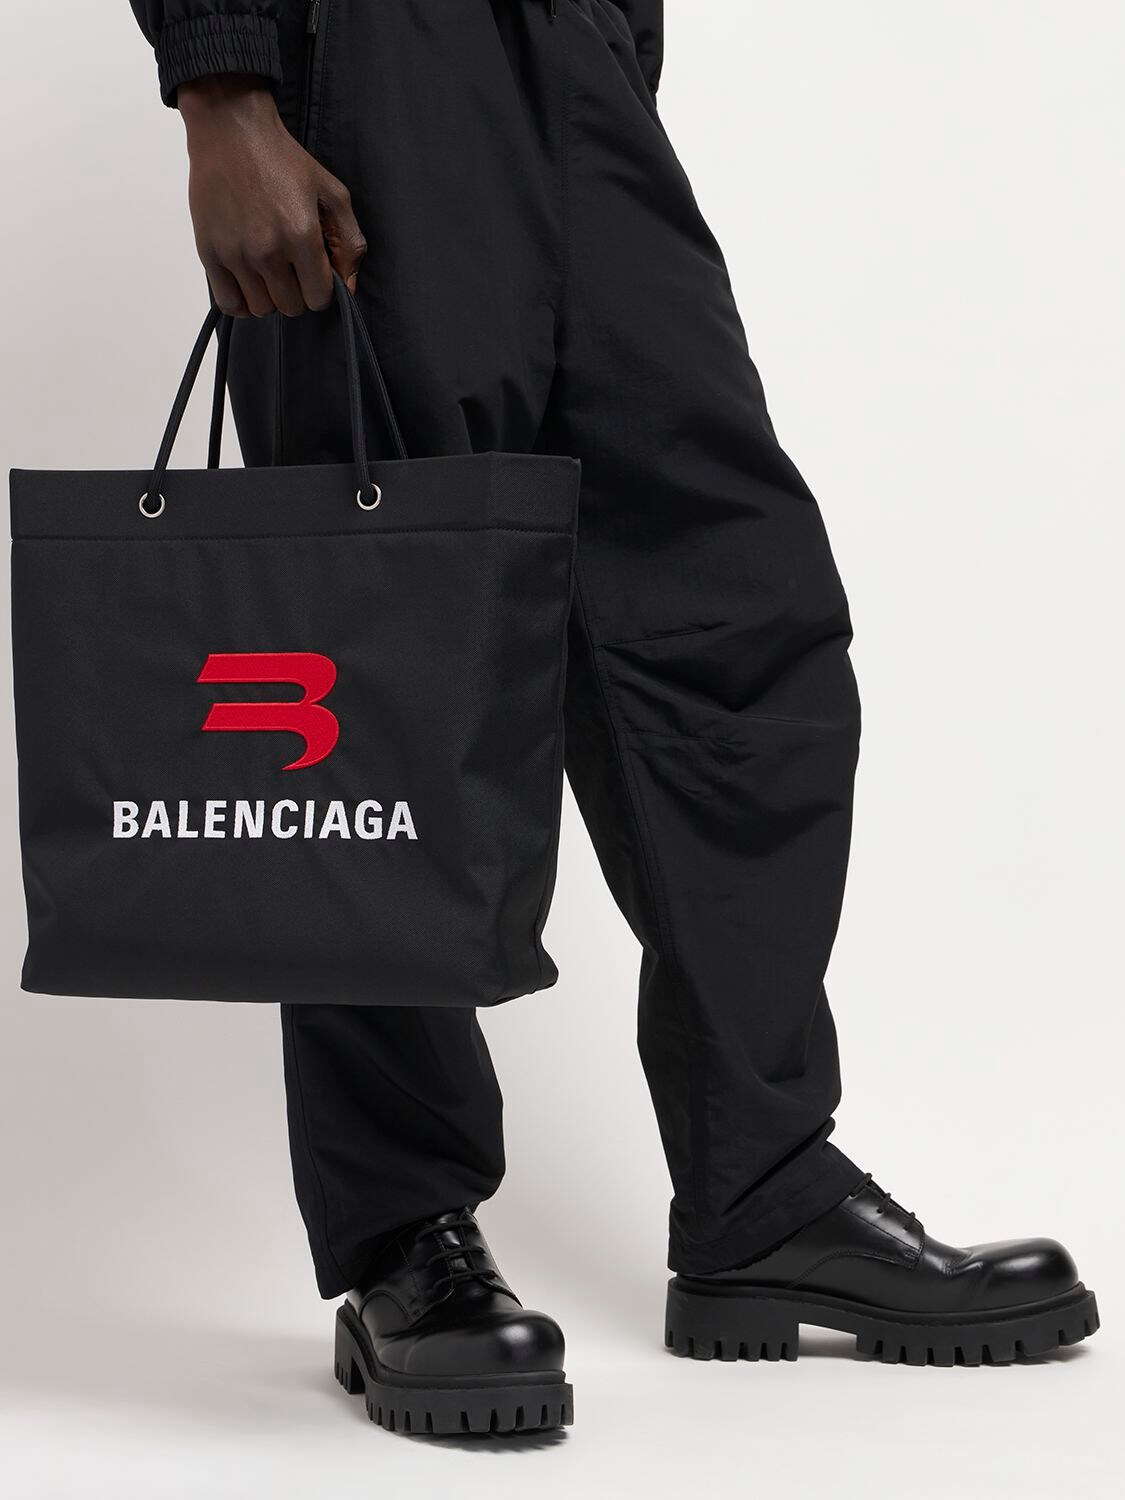 Balenciaga Explorer Embroidered Tote Bag